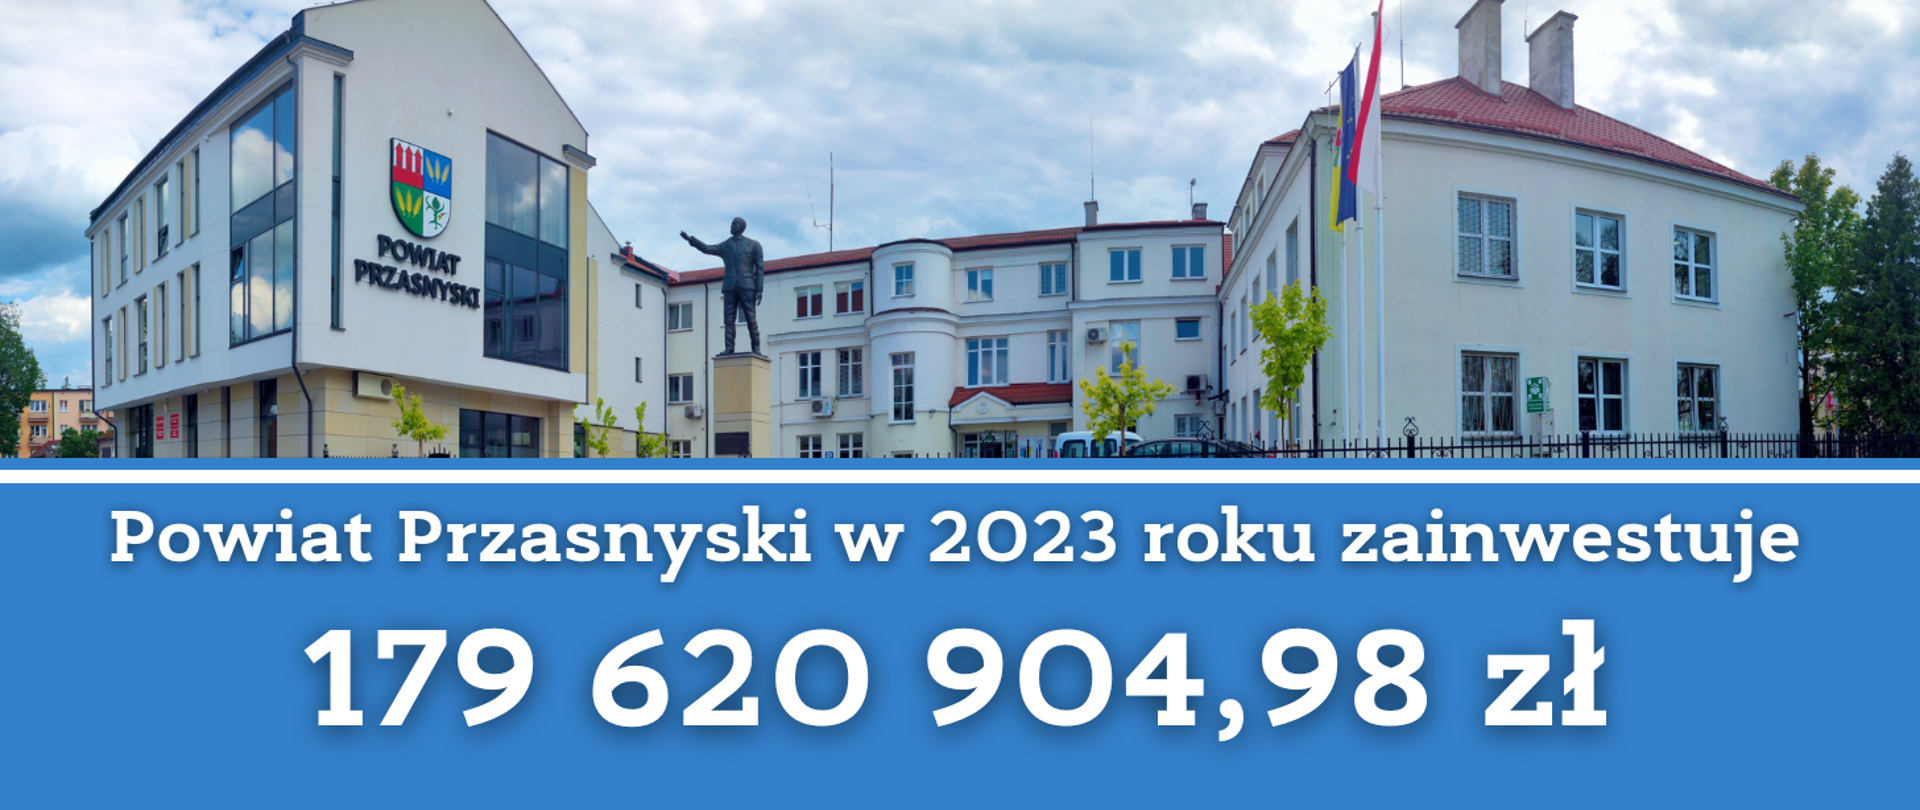 Grafika przedstawia informację o planach Powiatu Przasnyskiego, by wydać na inwestycje w 2023 roku blisko 180 milionów złotych.